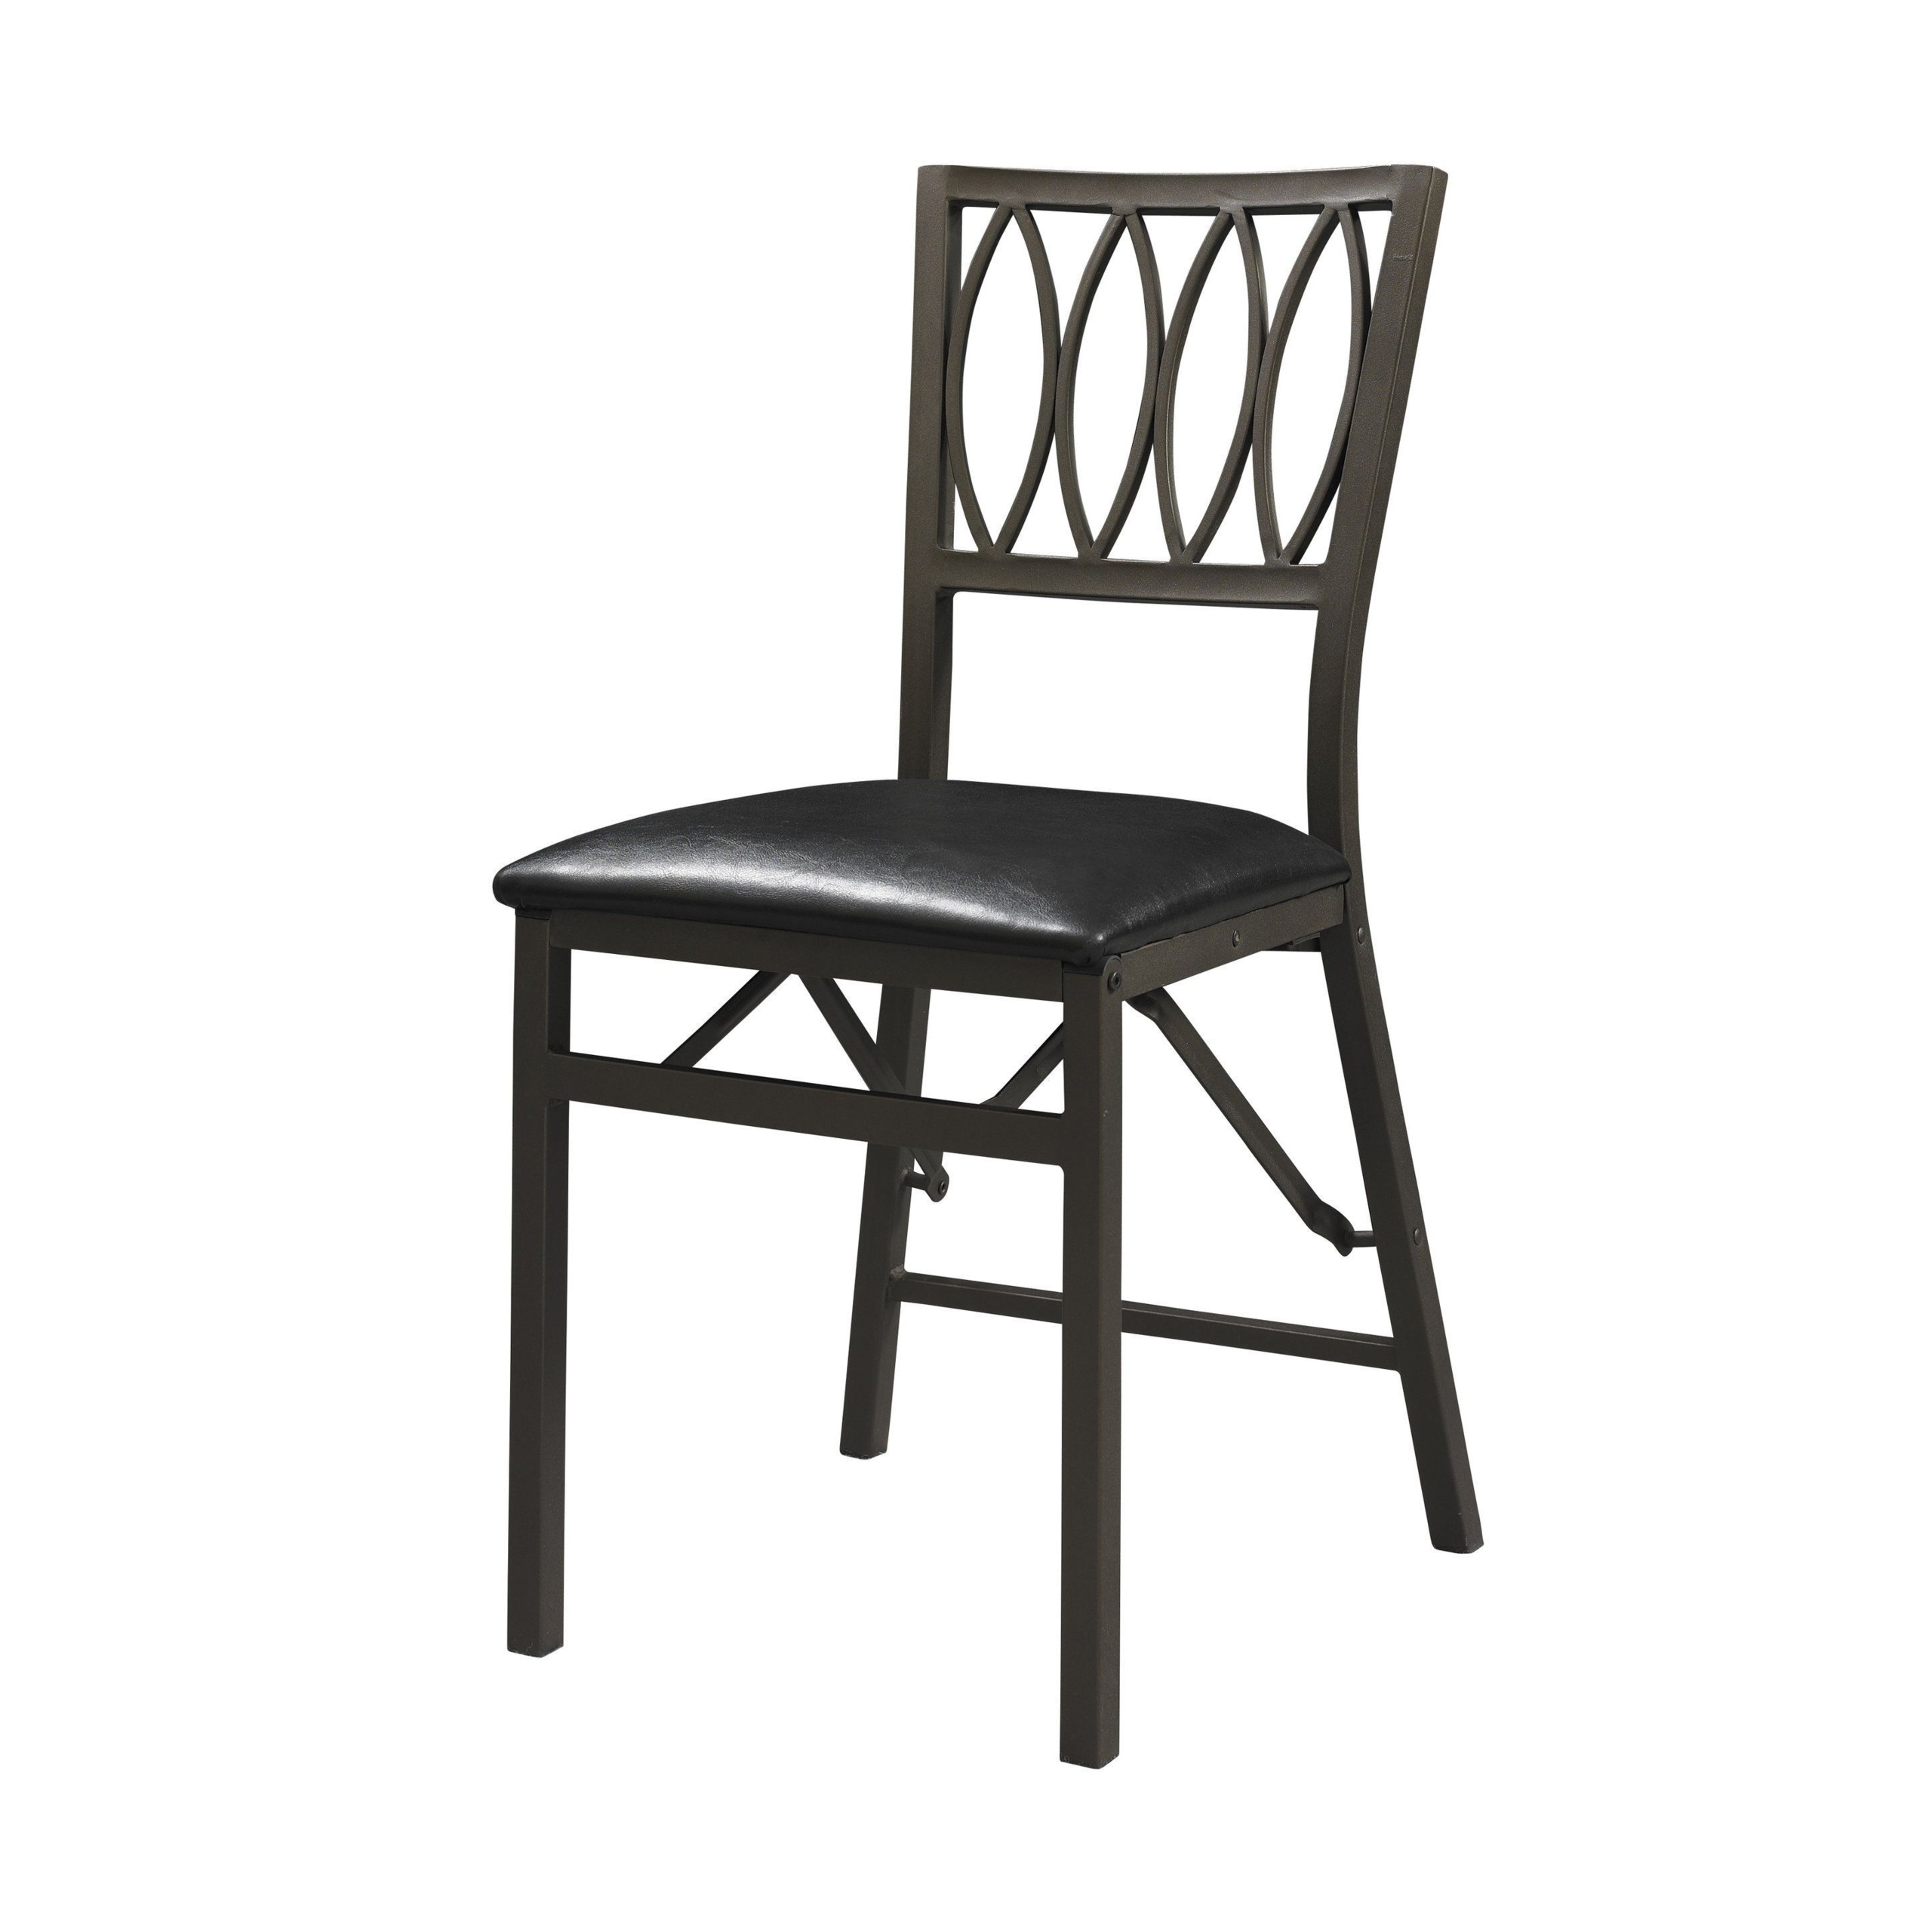 Arista Ovals Folding Chair